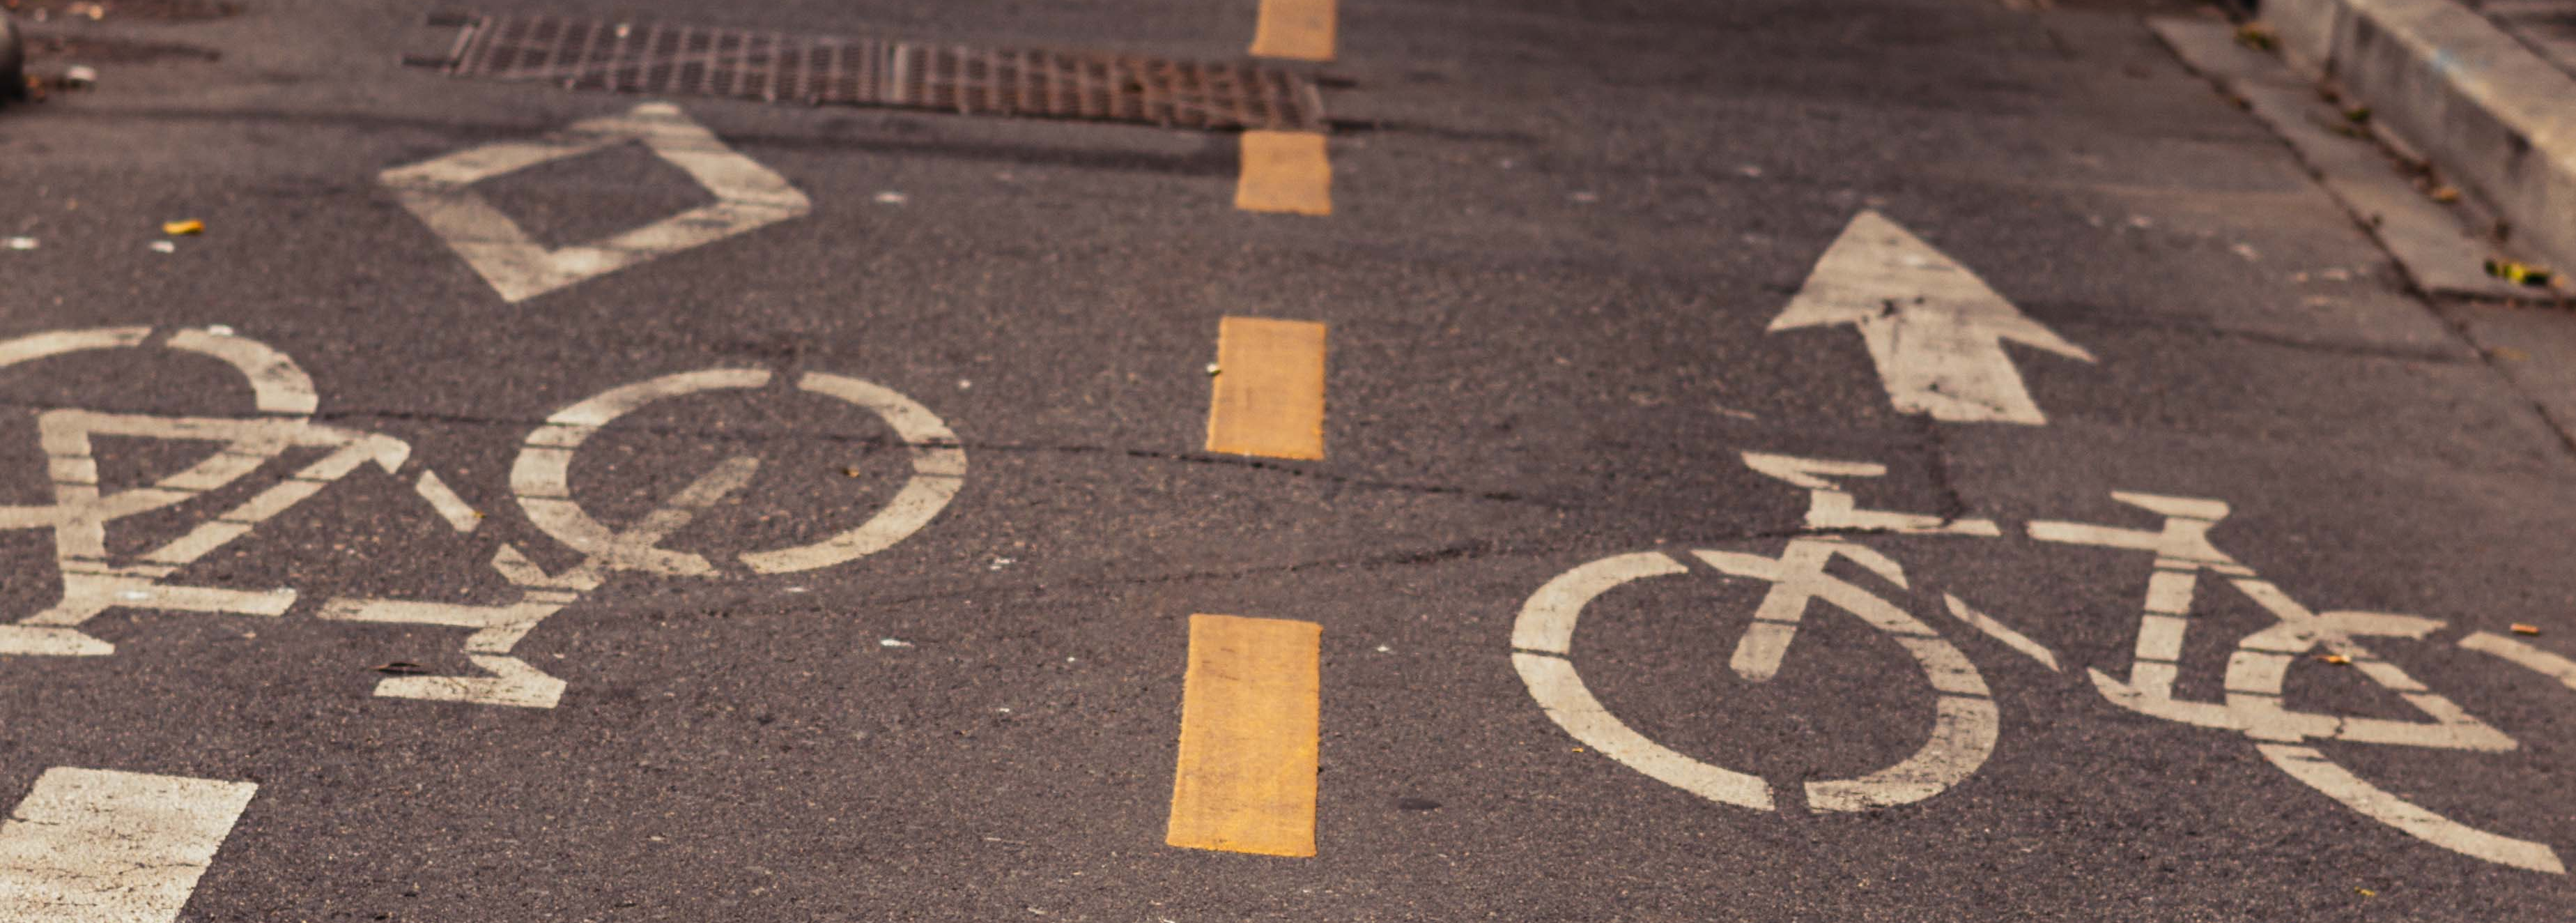 two-way bike lane